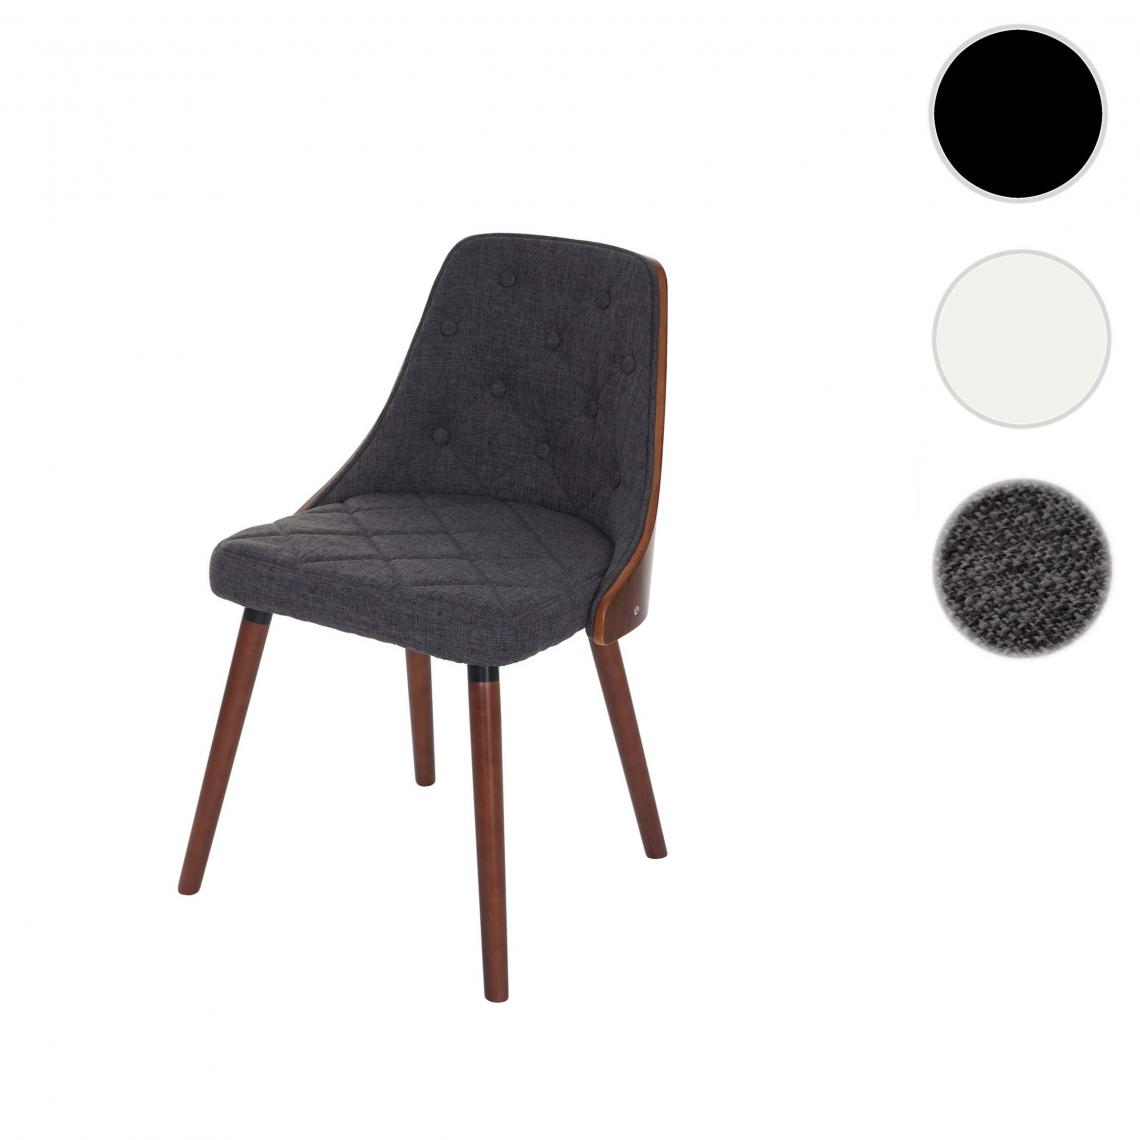 Mendler - Chaise de salle à manger HWC-A75, chaise visiteur chaise de cuisine, aspect noyer ~ tissu/textile gris - Chaises